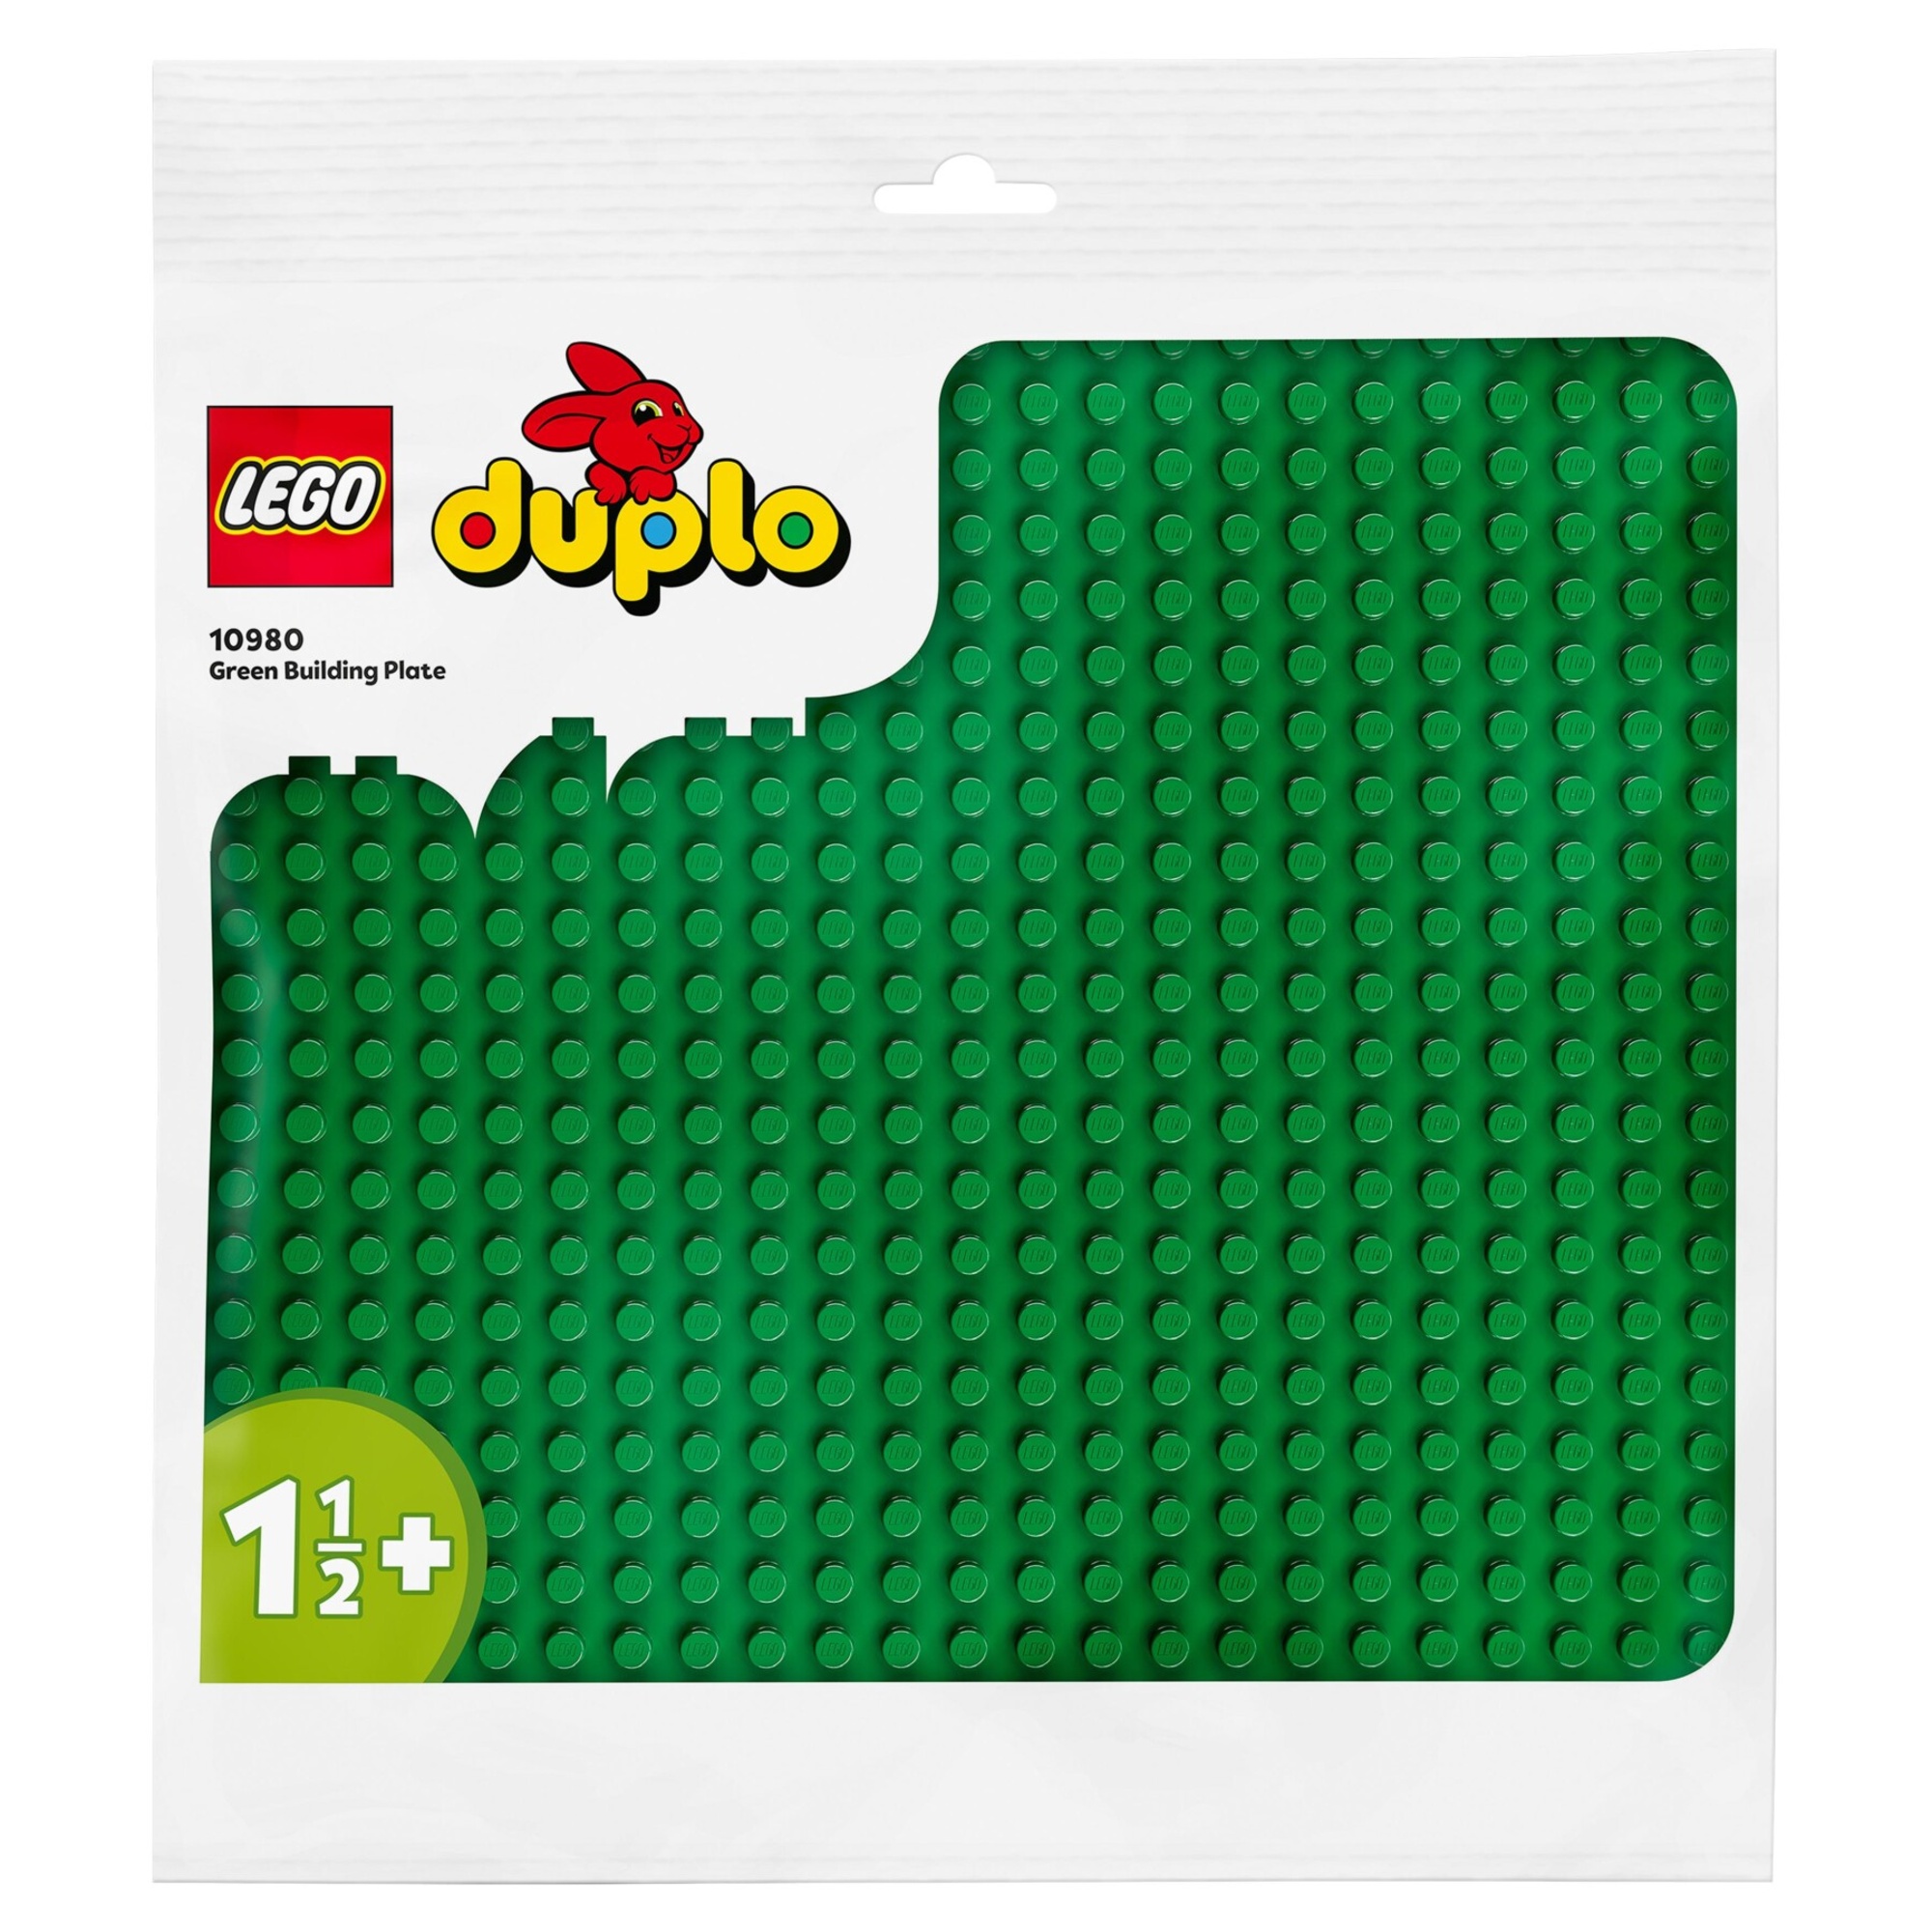 Lego duplo 10980 - base verde - tavola classica per mattoncini - Duplo